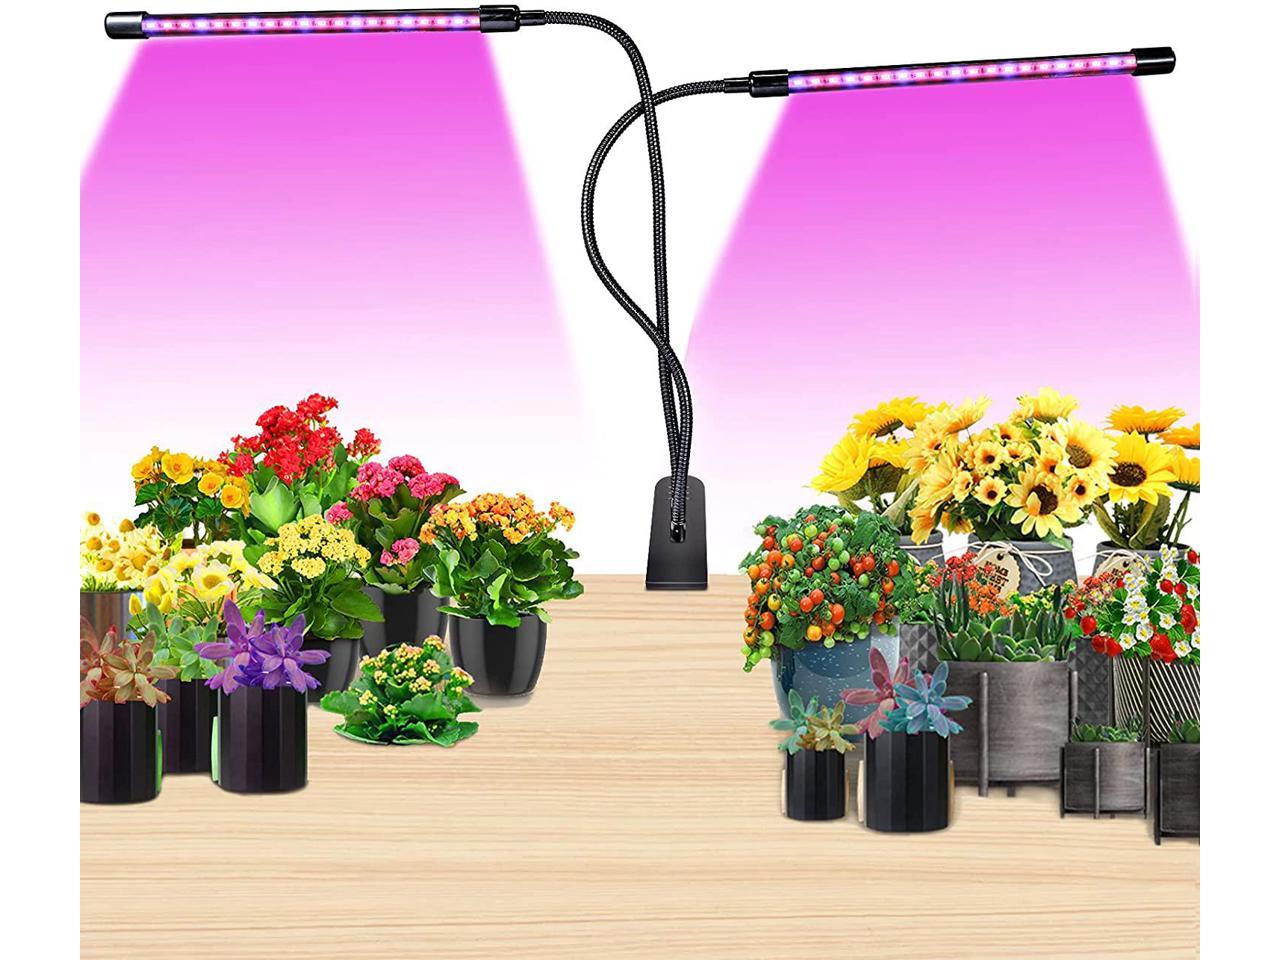 LED Grow Light Strip Waterproof Full Spectrum Lamp For Indoor Plant Veg Flower 